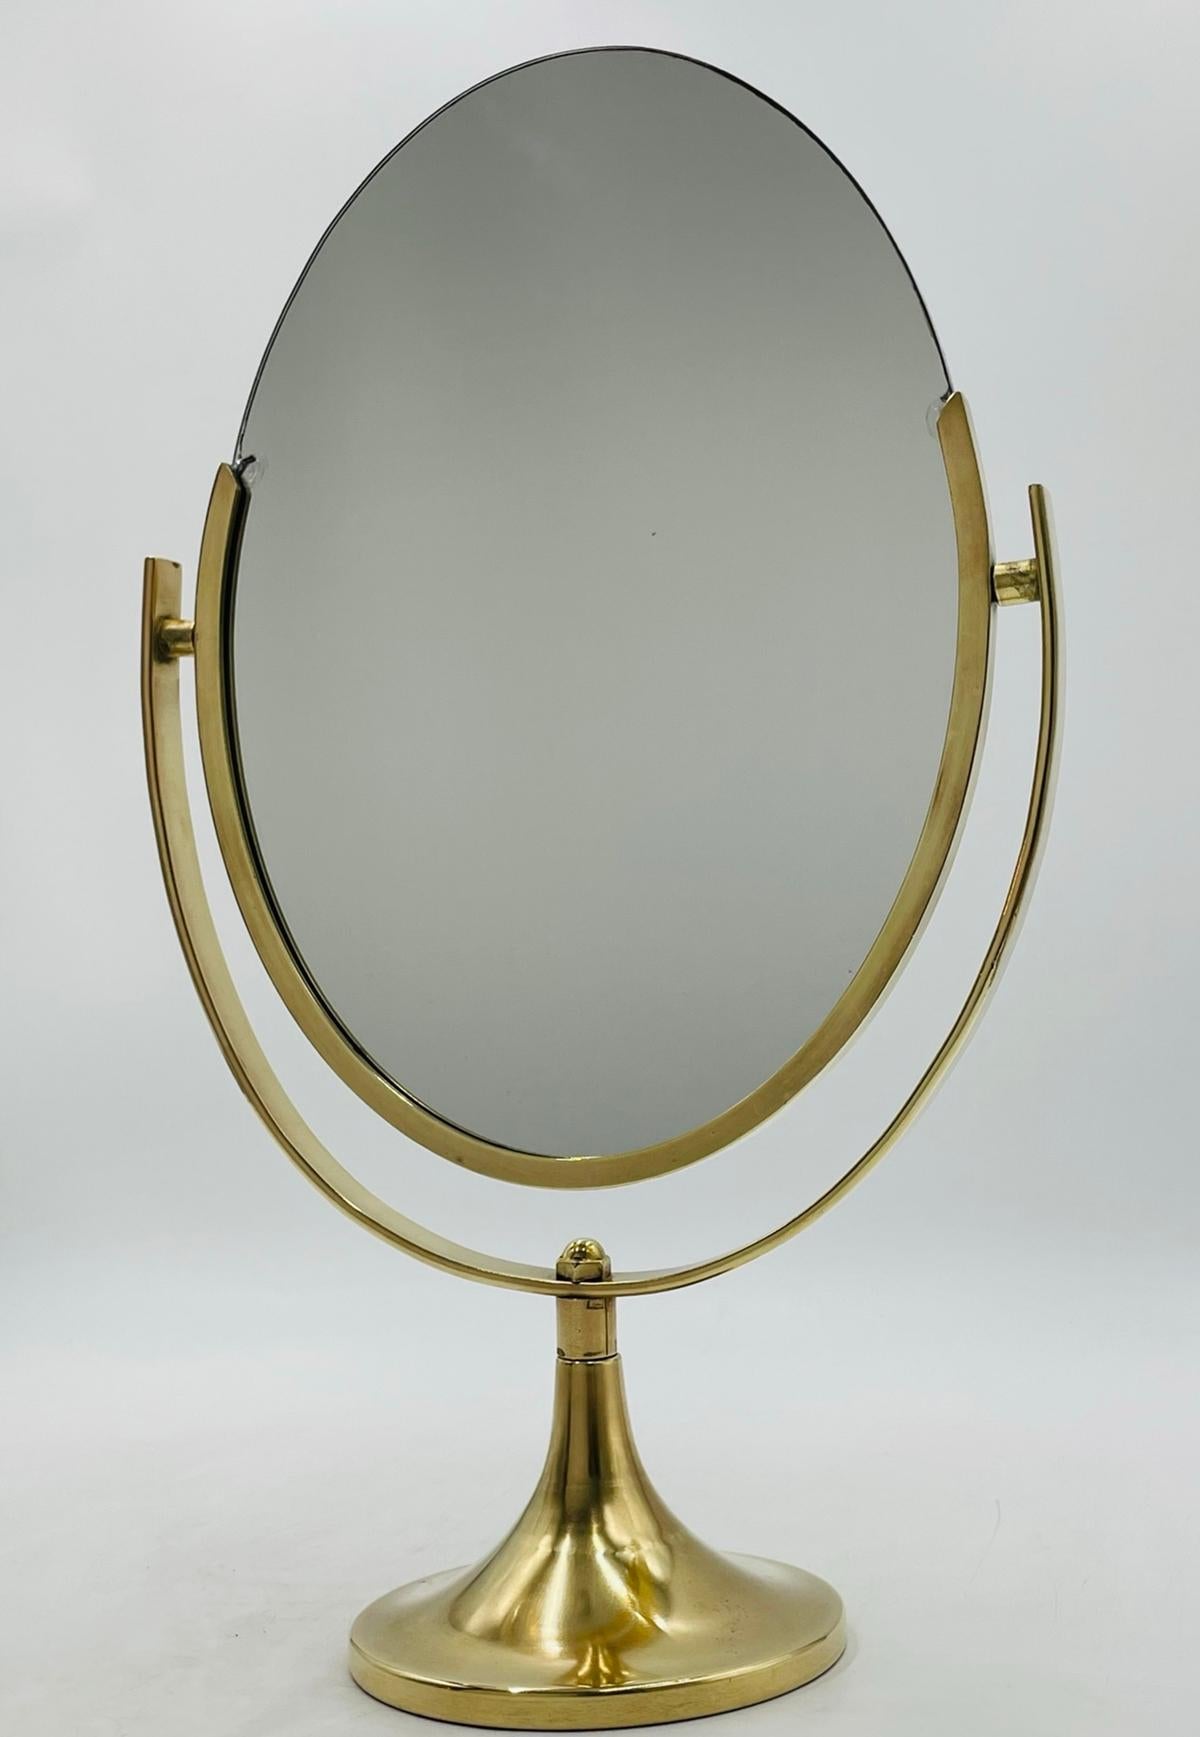 Le miroir de courtoisie double face en laiton de Charles Hollis Jones est un meuble étonnant et fonctionnel qui rehaussera n'importe quel espace. Fabriqué à l'origine aux États-Unis dans les années 1970, ce miroir est un véritable chef-d'œuvre